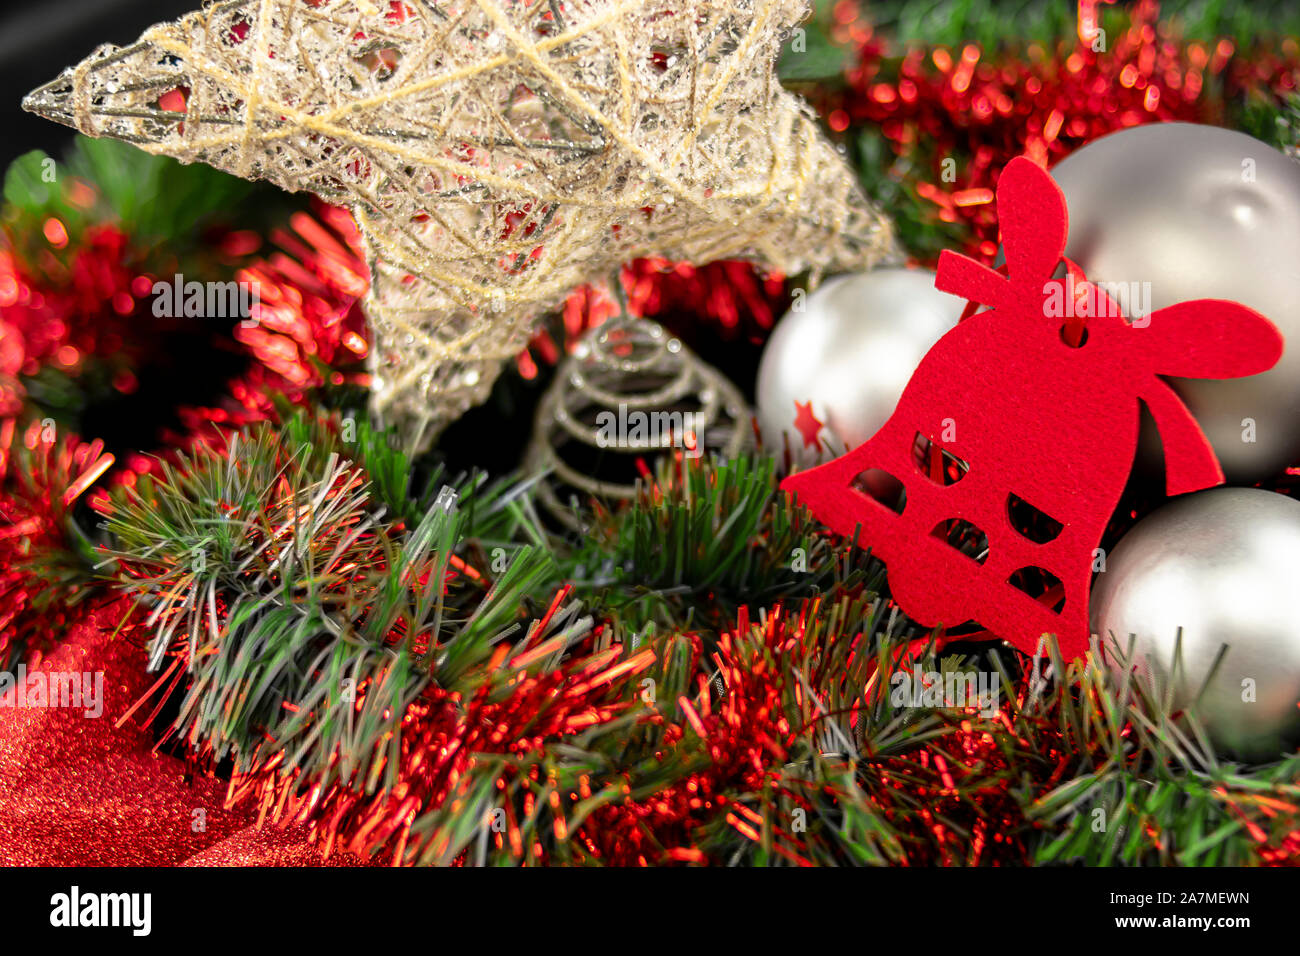 Weihnachten Zusammensetzung der Sterne, Glocken, Kugeln und Lametta in Grün, Rot, Grau und Gold Tönen für Gratulation und guten Wünsche am Ende des Jahres. Stockfoto